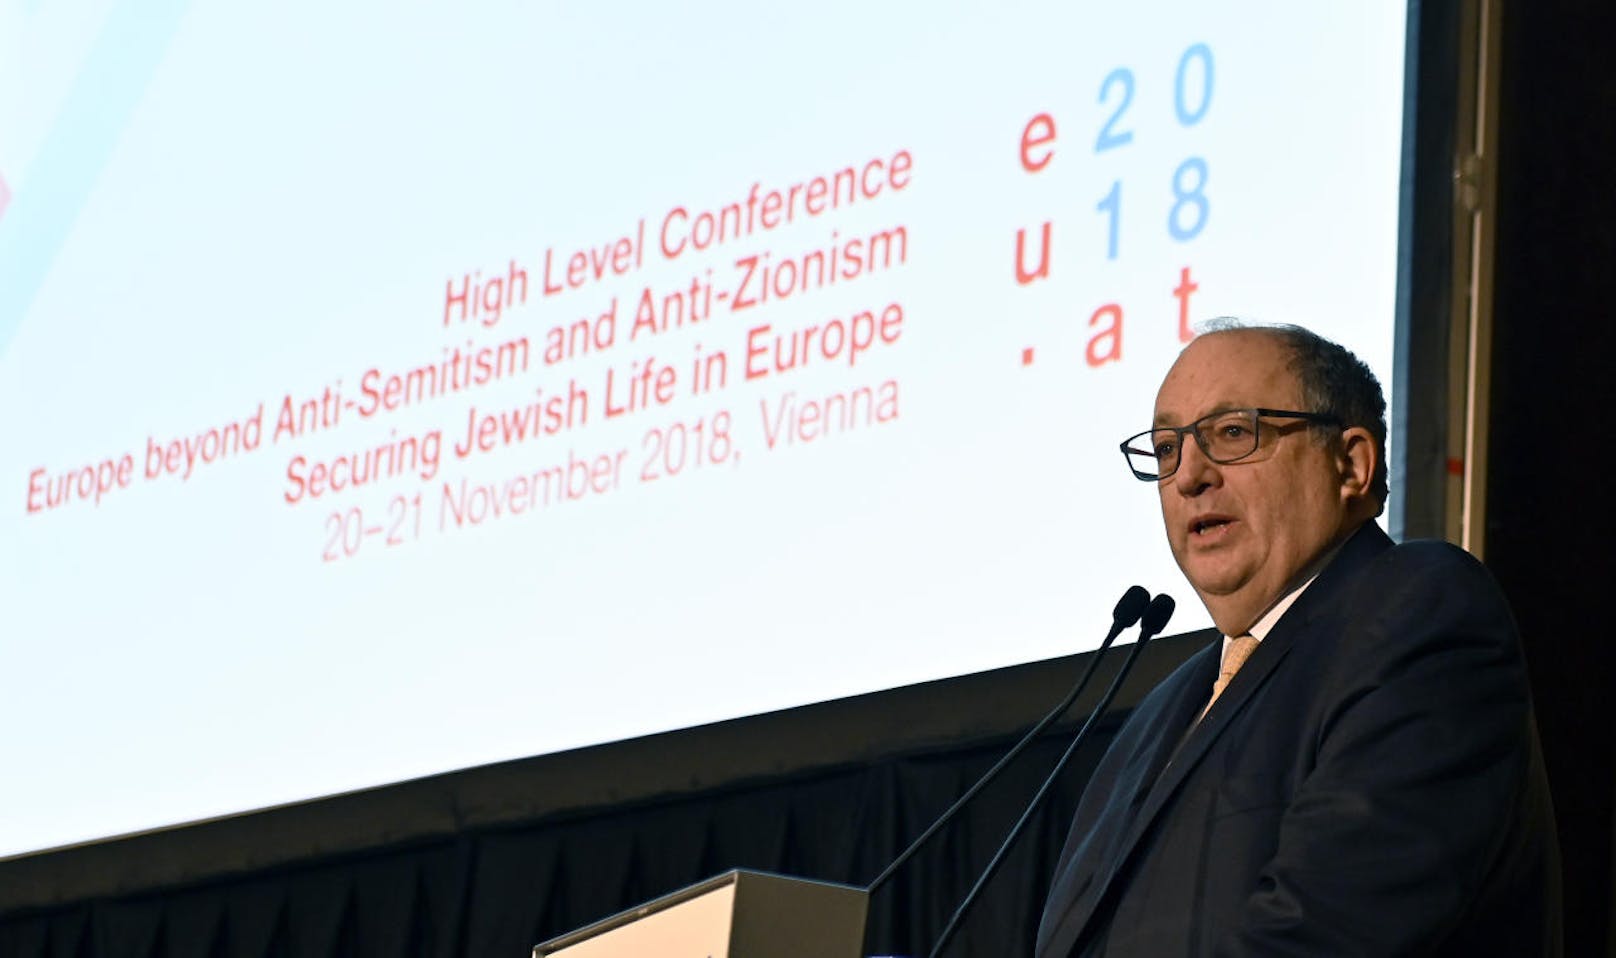 <b>Ariel Muzicant</b>, Vizepräsident des European Jewish Congress im Rahmen einer Konferenz "Europa jenseits von Antisemitismus und Antizionismus - Sicherung des jüdischen Lebens in Europa" am Mittwoch, 21. November 2018 in Wien.